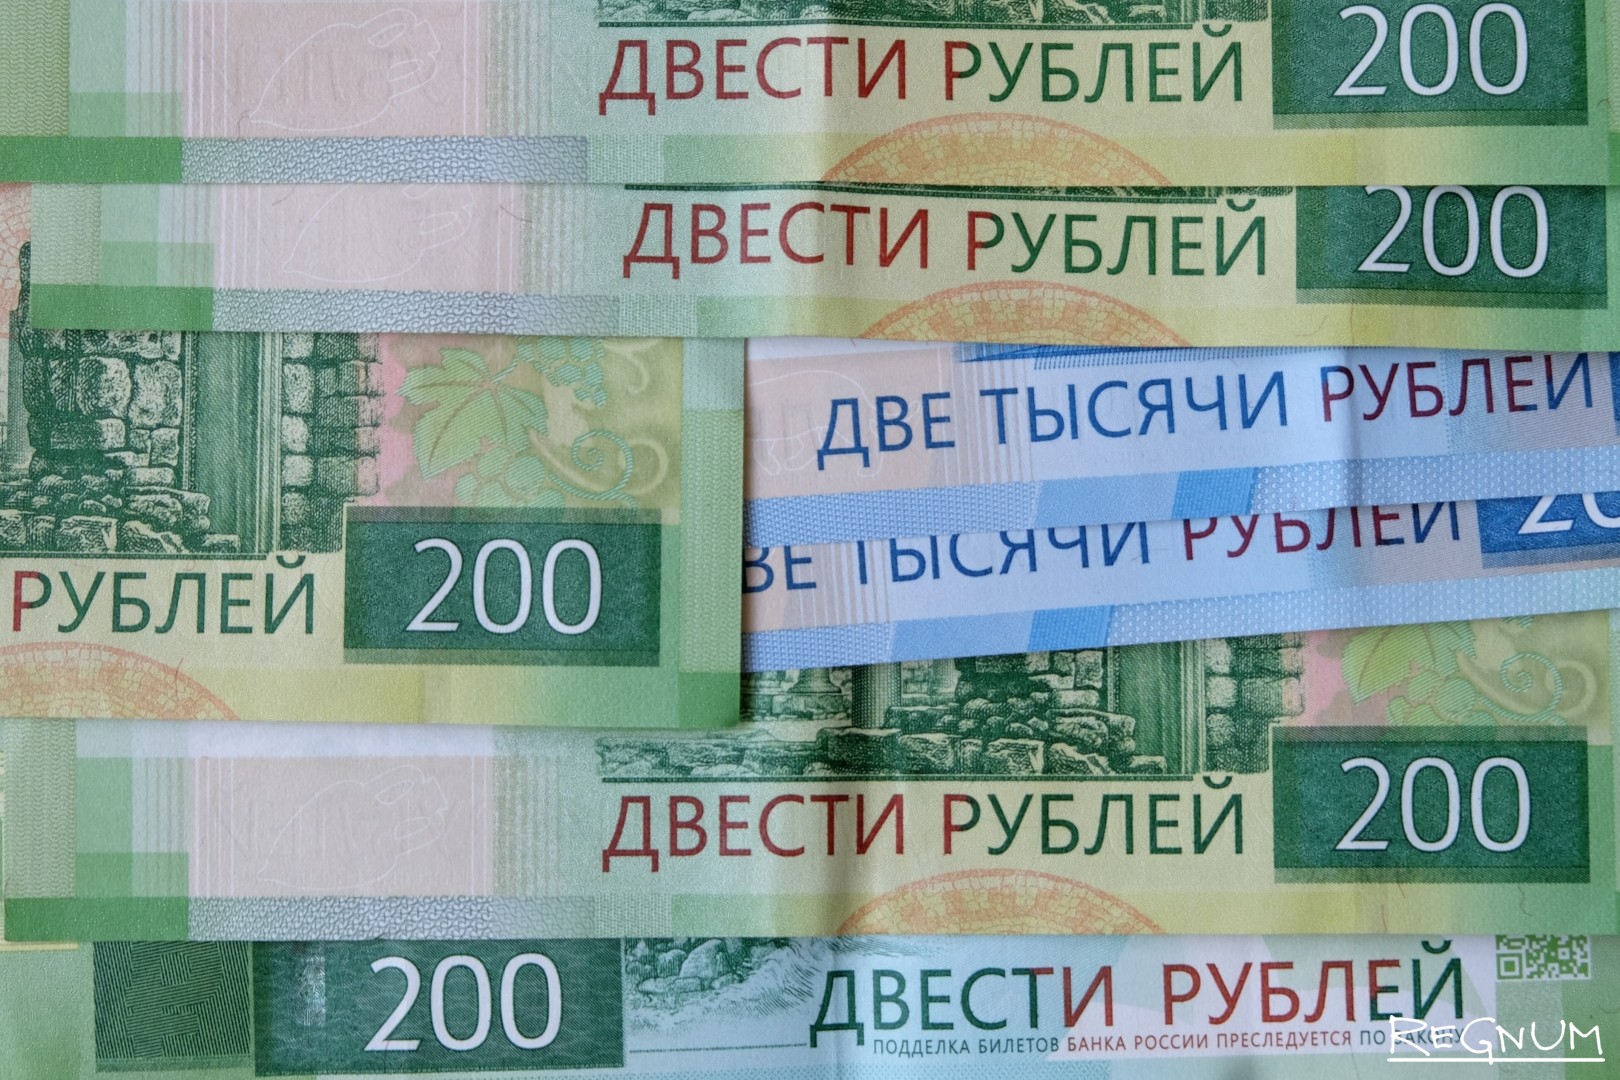 10 от 200 рублей. Двесте или двести рублей. 200 Руб в лей. Двести рублей.